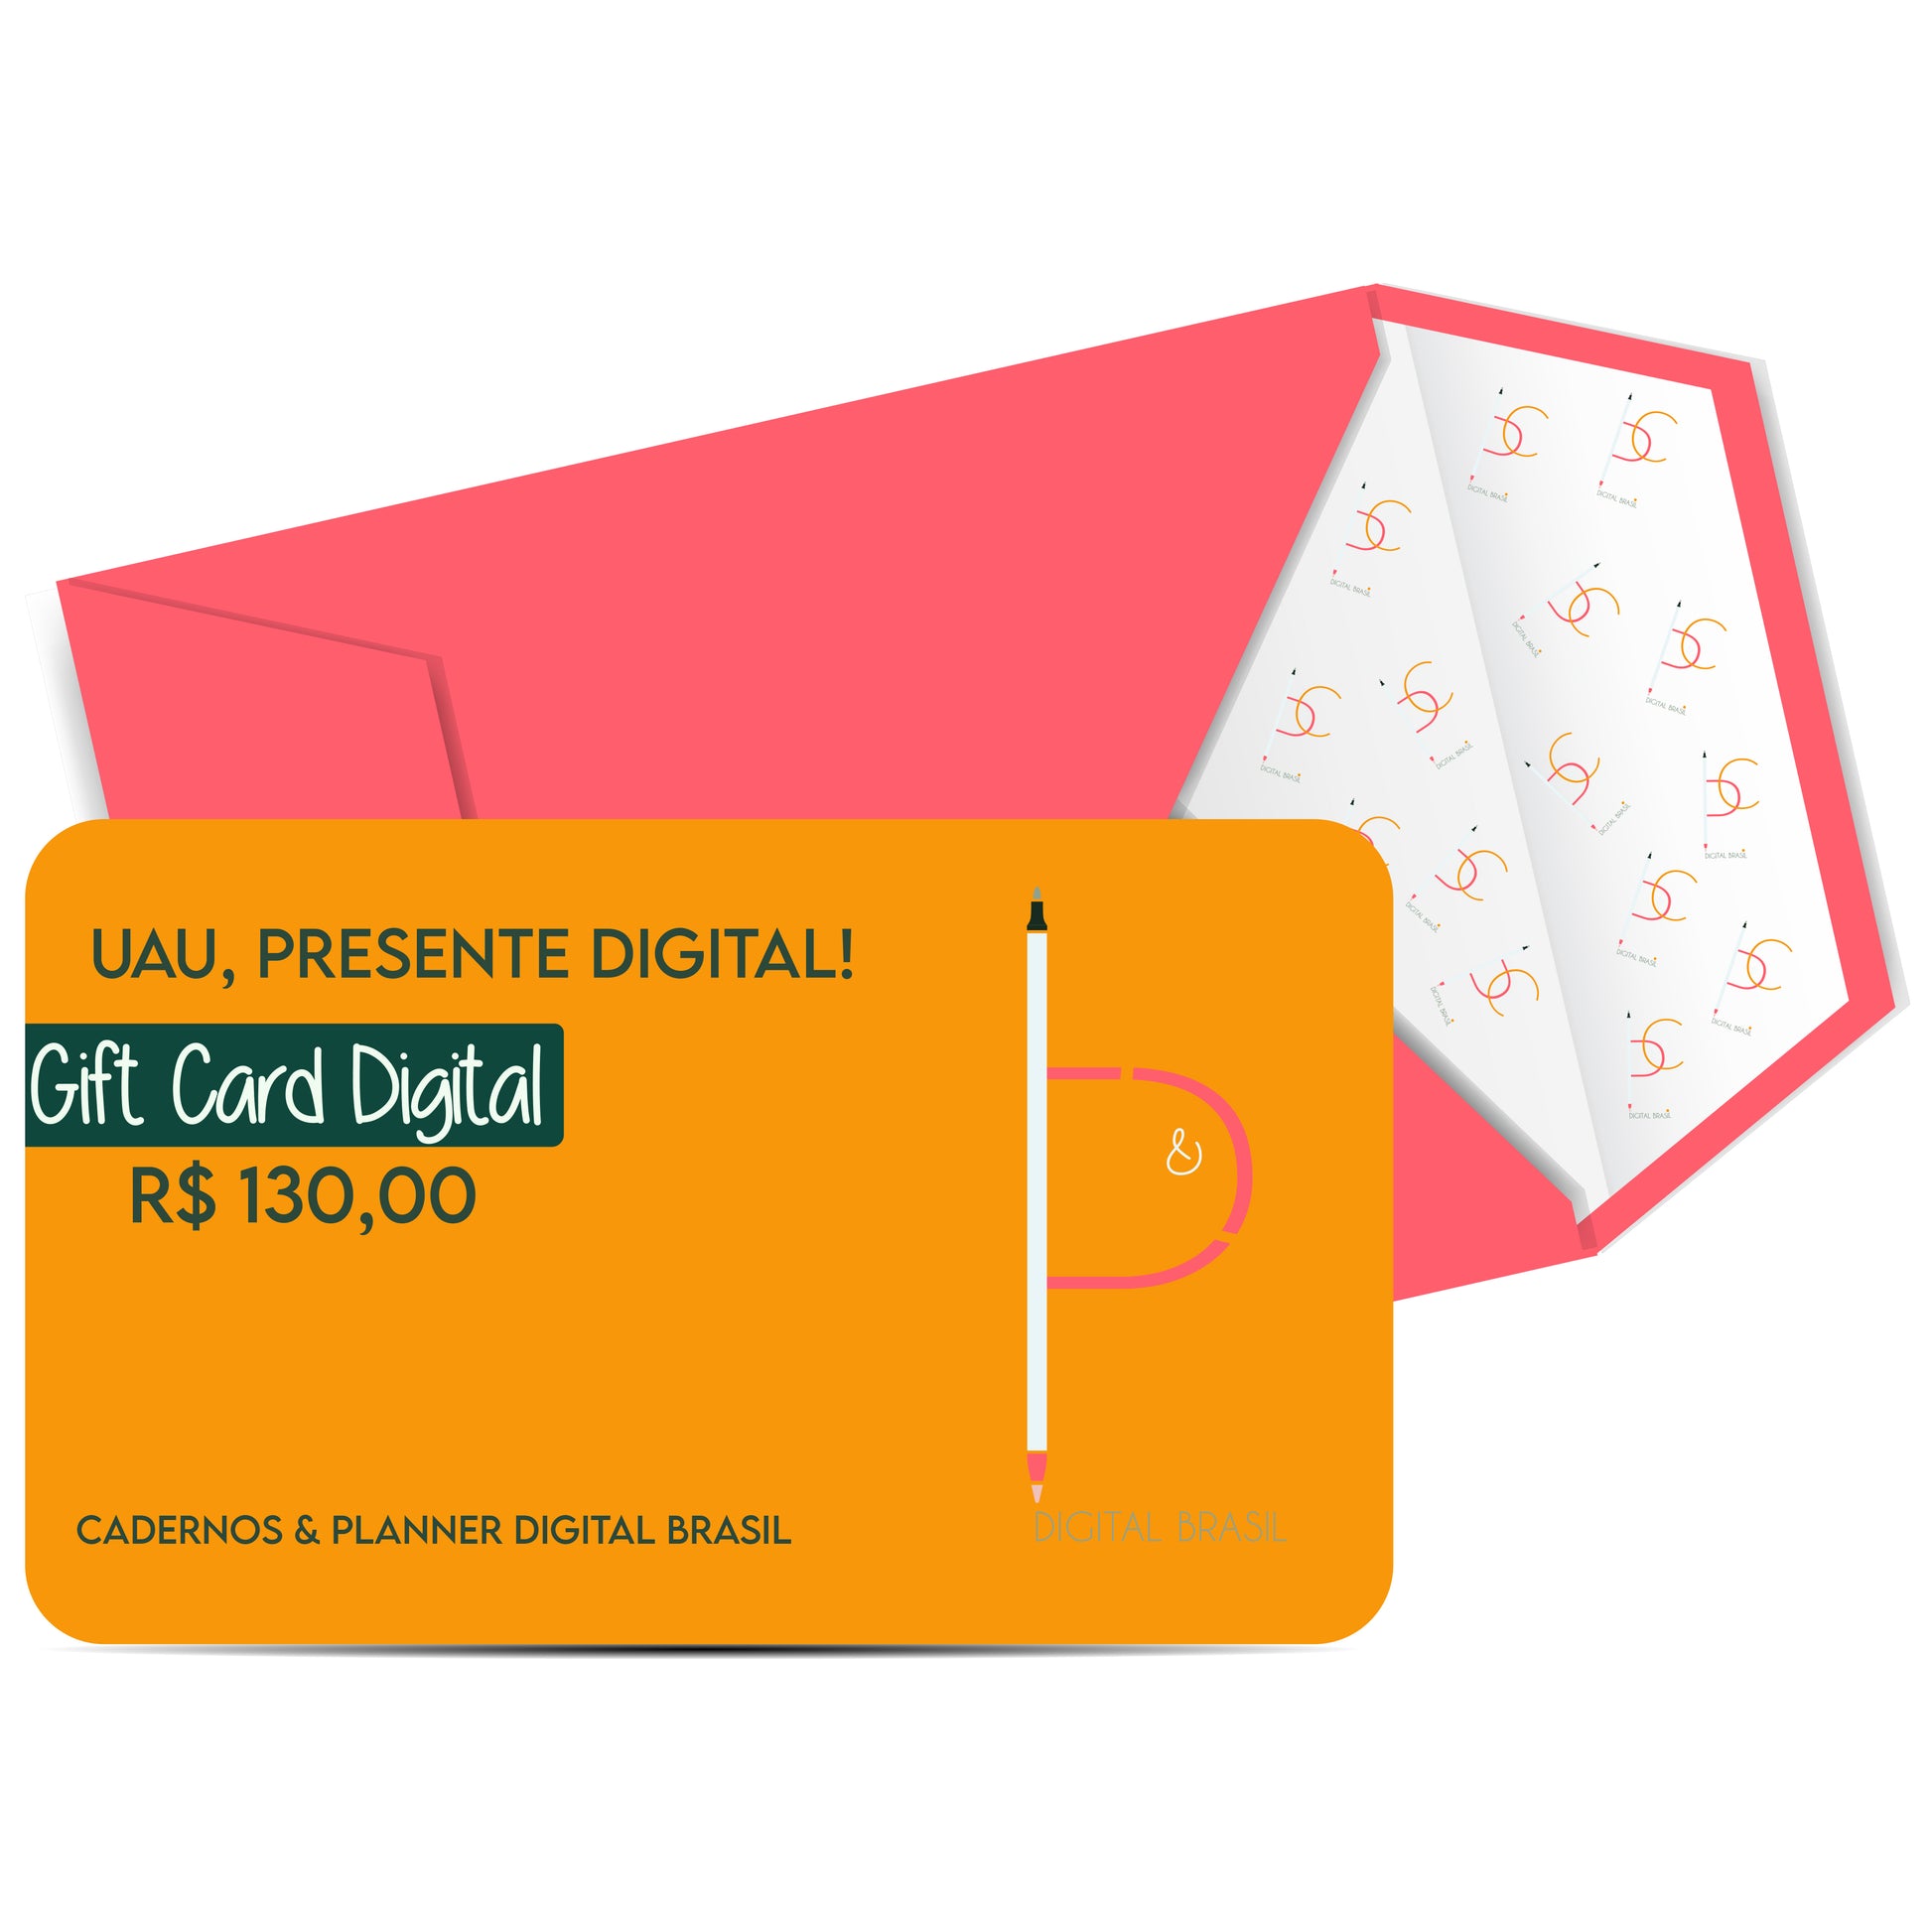 Uau Presente Digital R$ 130,00 Vinte Reais Cartão Presente Digital Gift Card para produtos da Cadernos & Planner Digital Brasil, Planner Digital, Mapa Mental Digital, Caderno Digital, Adesivos Stickers Digital